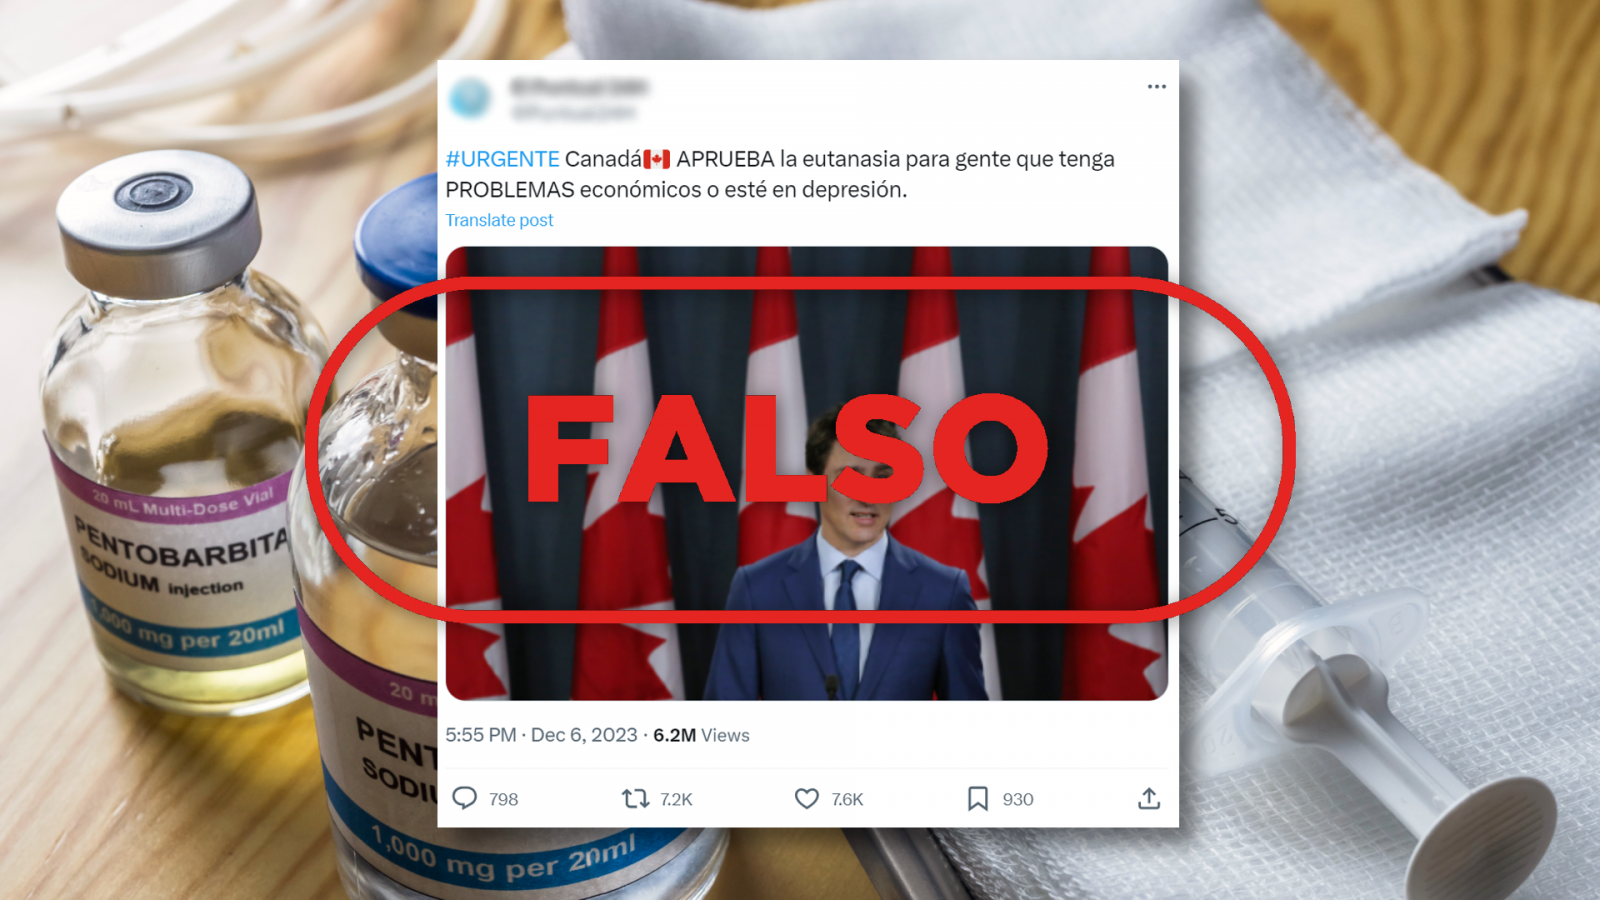 Eutanasia: Es falso que Canadá la haya aprobado para personas con problemas económicos, con el sello Falso en rojo de VerificaRTVE